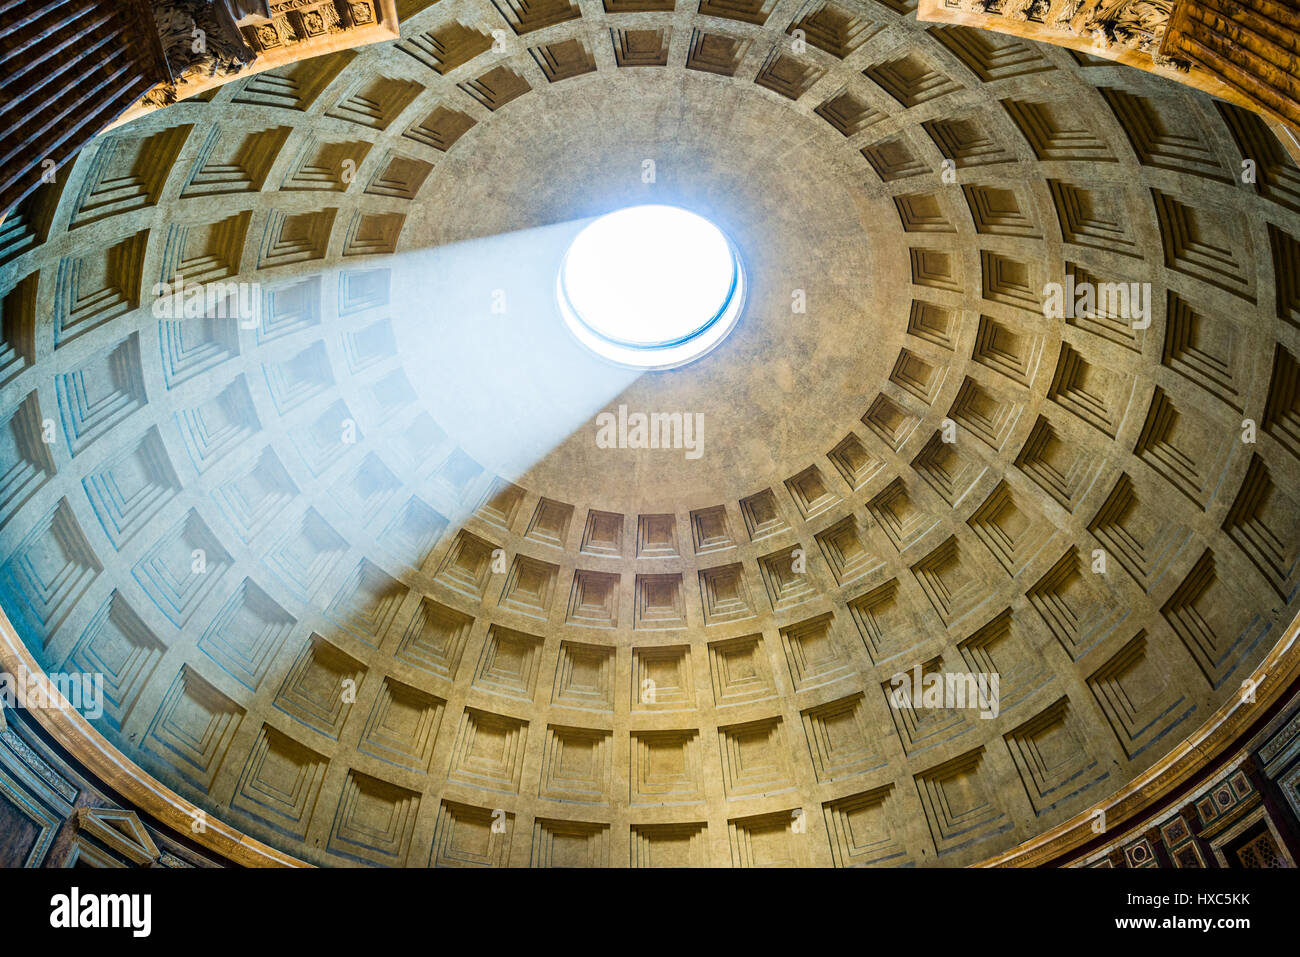 Dôme du Panthéon, de l'intérieur, le temple romain de emeperor Trajan, l'antiquité romaine, l'Église catholique romaine de Santa Maria ad Banque D'Images